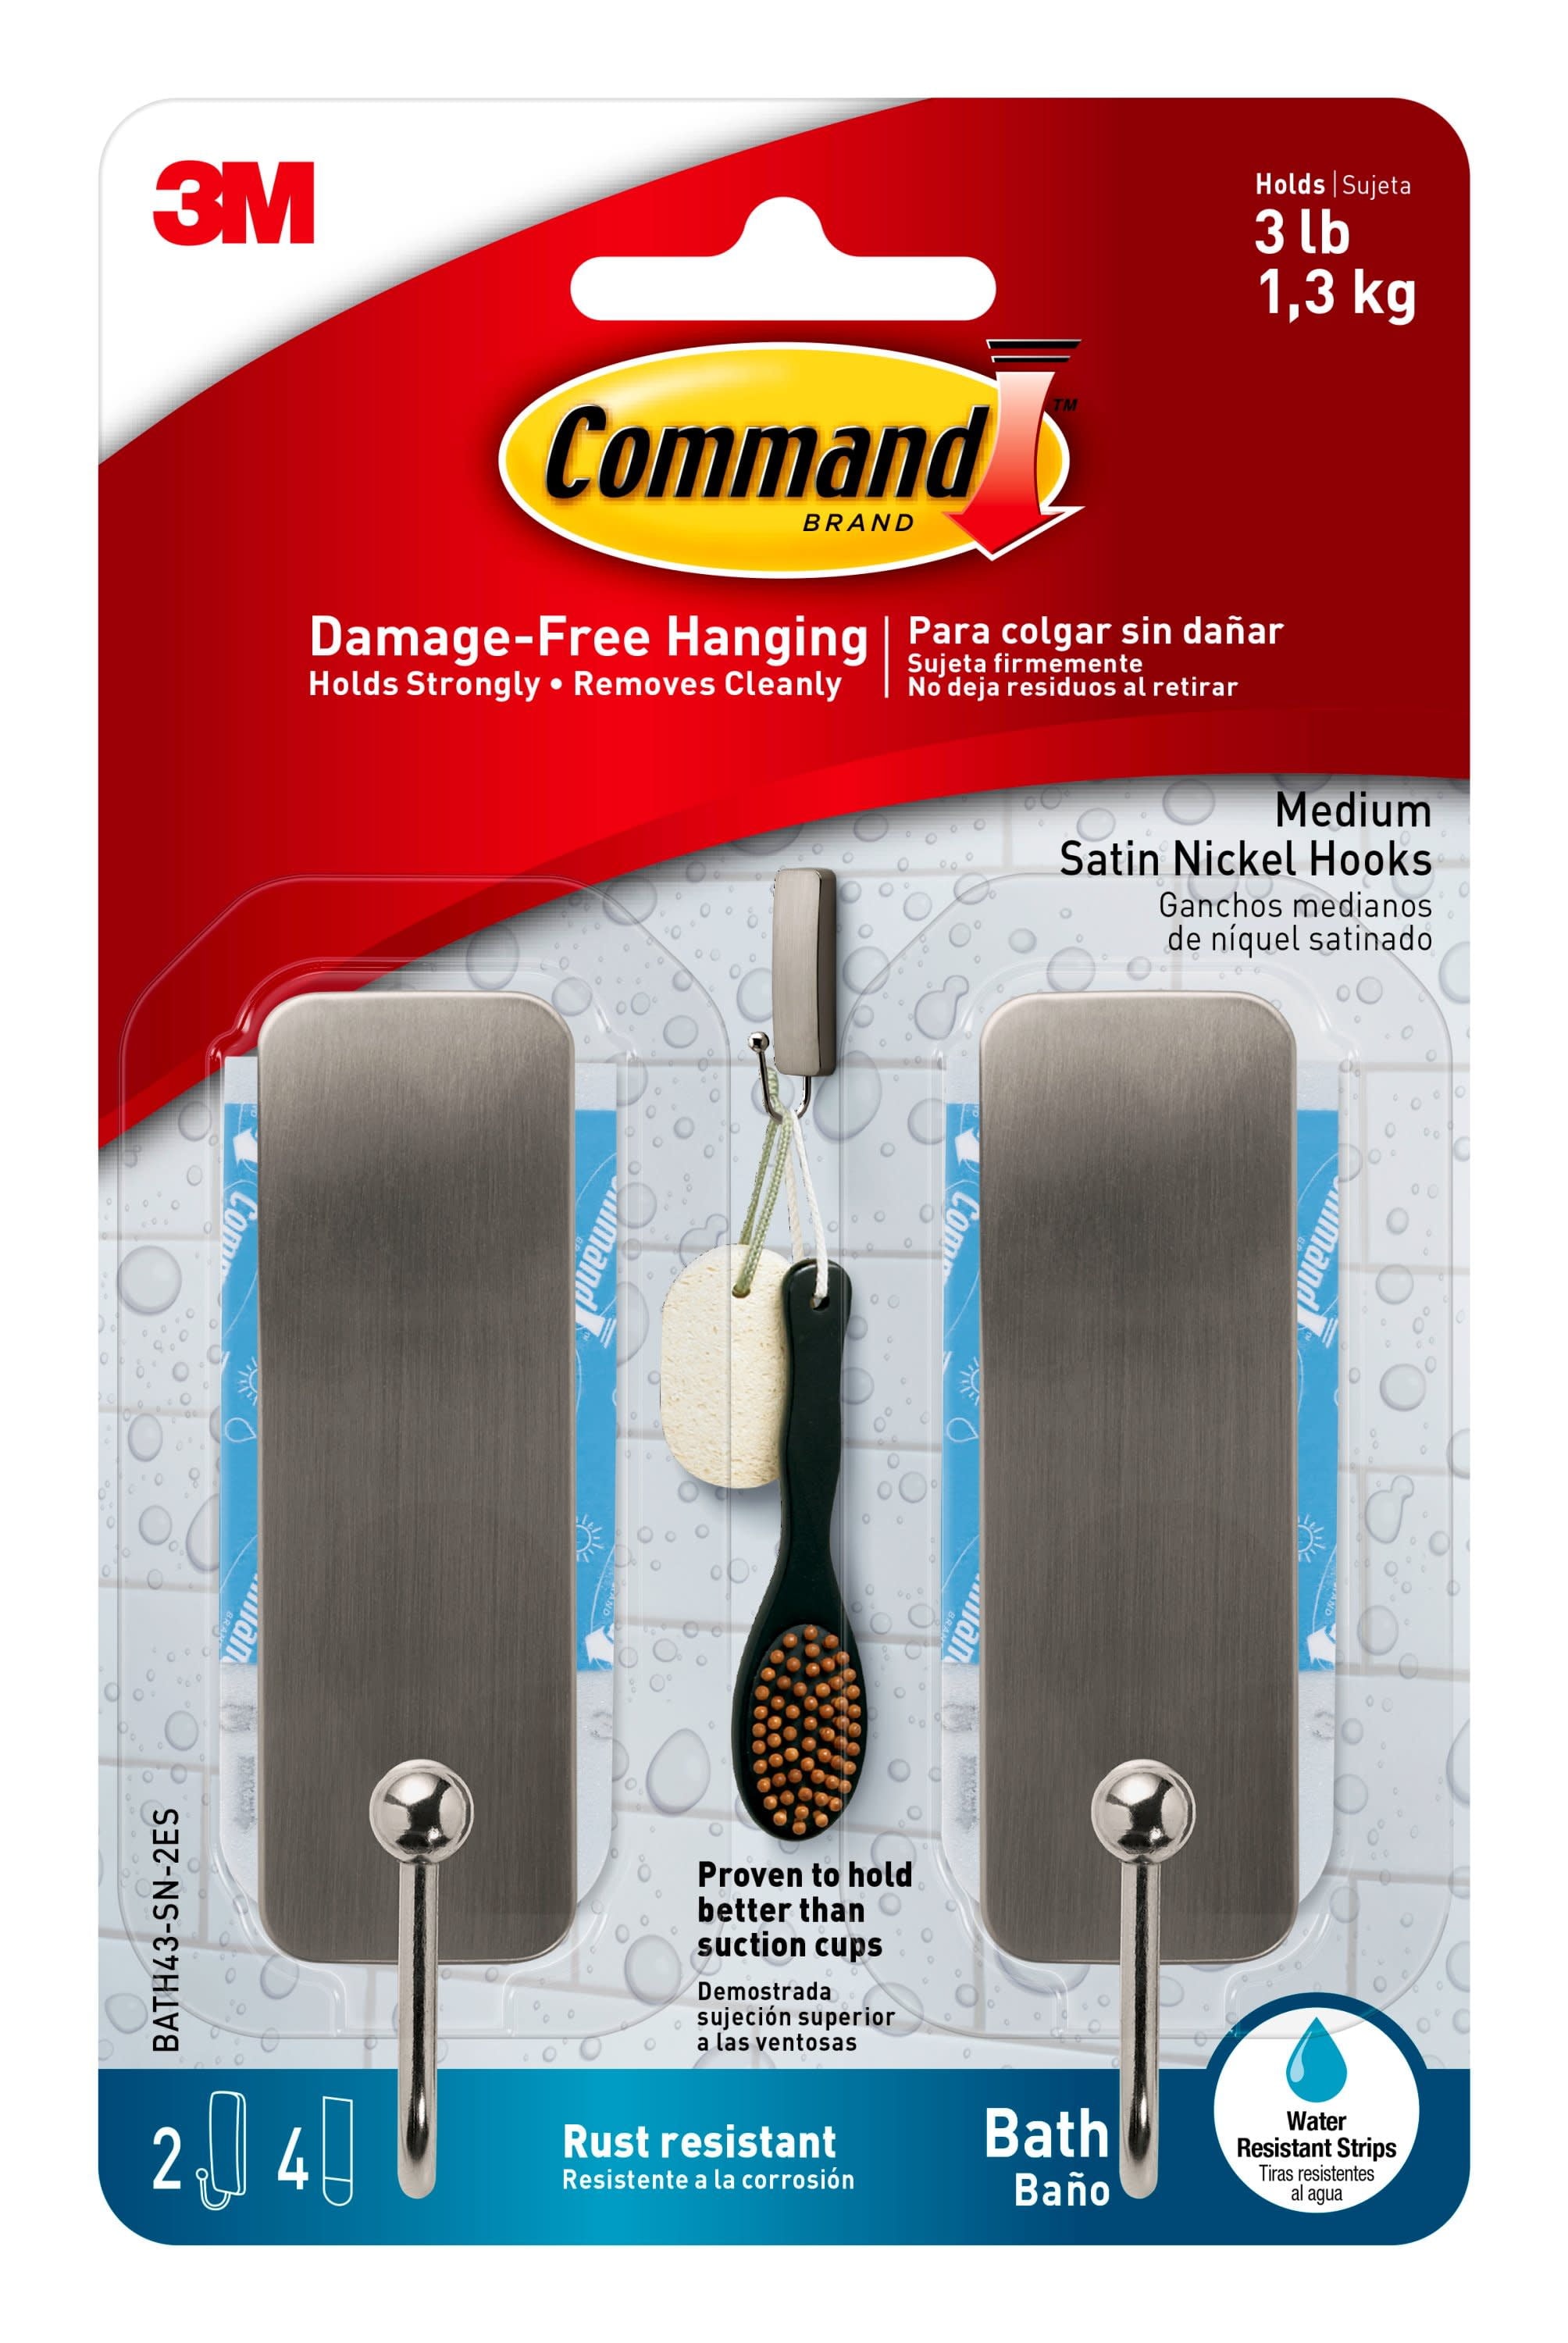 Command 10 Lb XL Heavyweight Wall Hook, White, Damage Free